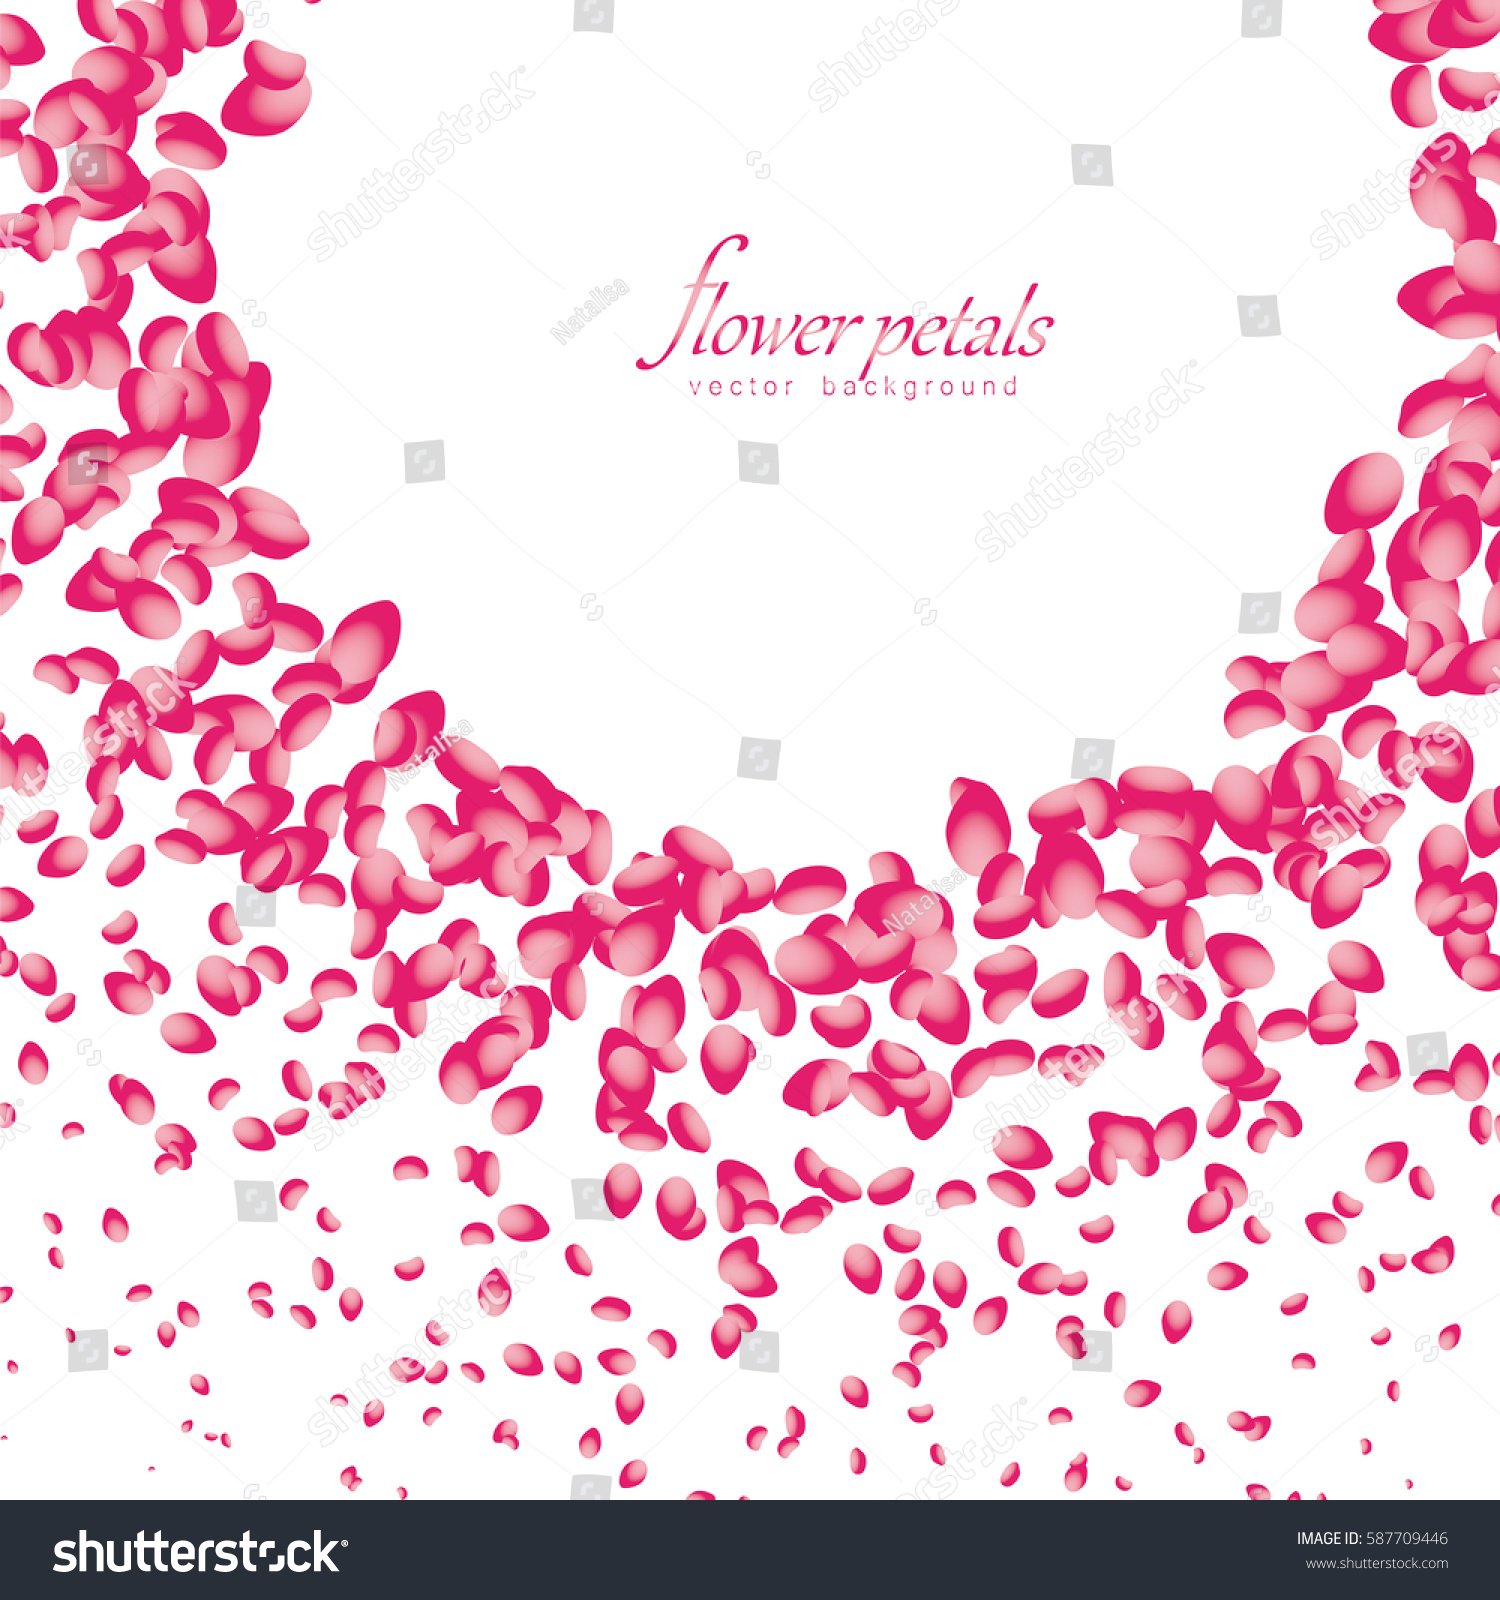 Edit Vectors Free Online - Flowers petals | Shutterstock Editor